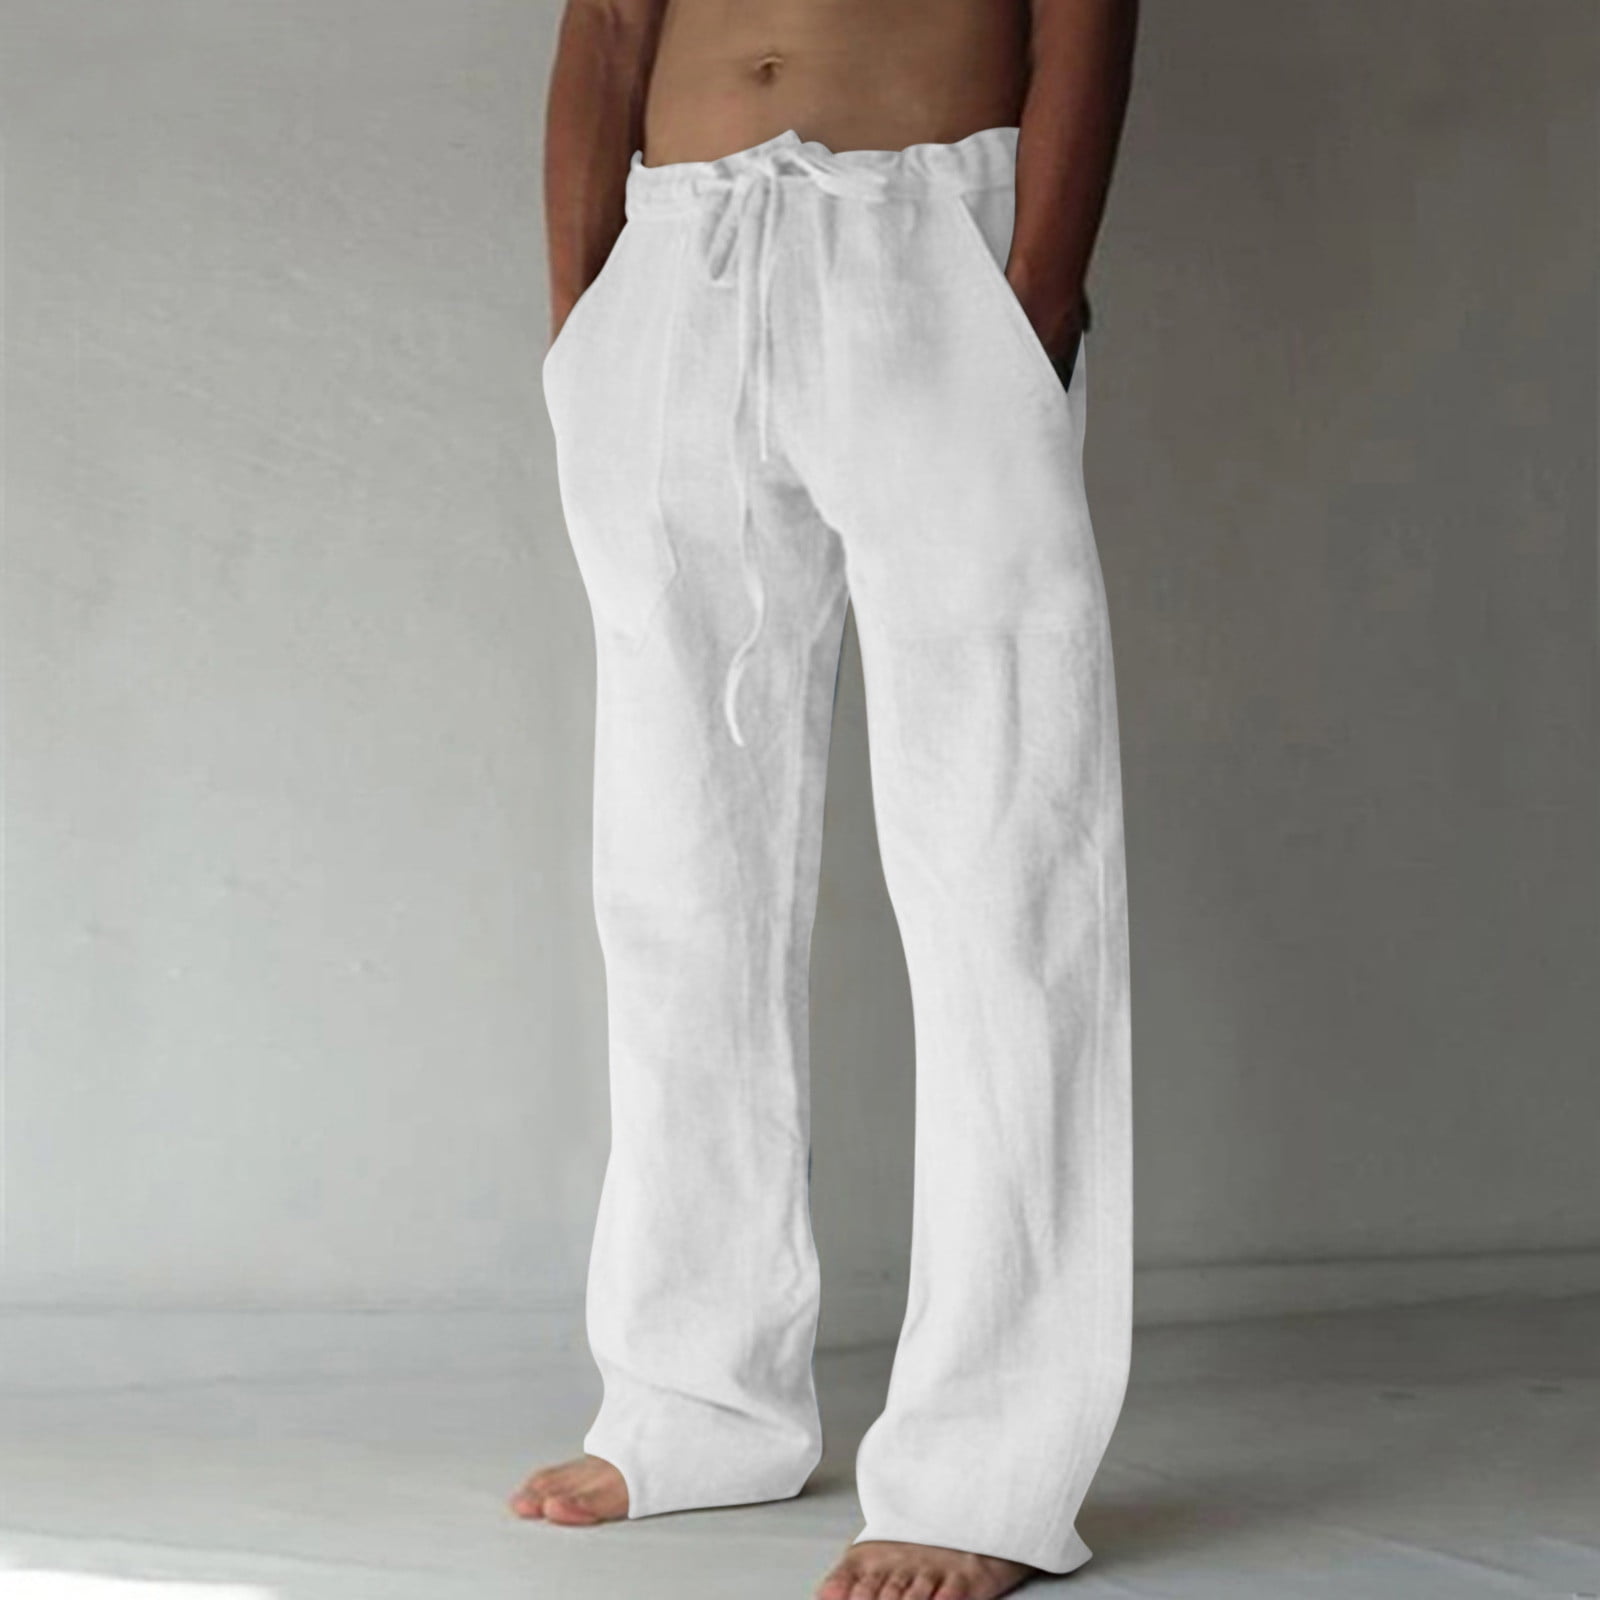 Mens Hemp Pants - Hemp Clothing | Marcel Hemp | Santa Barbara CA